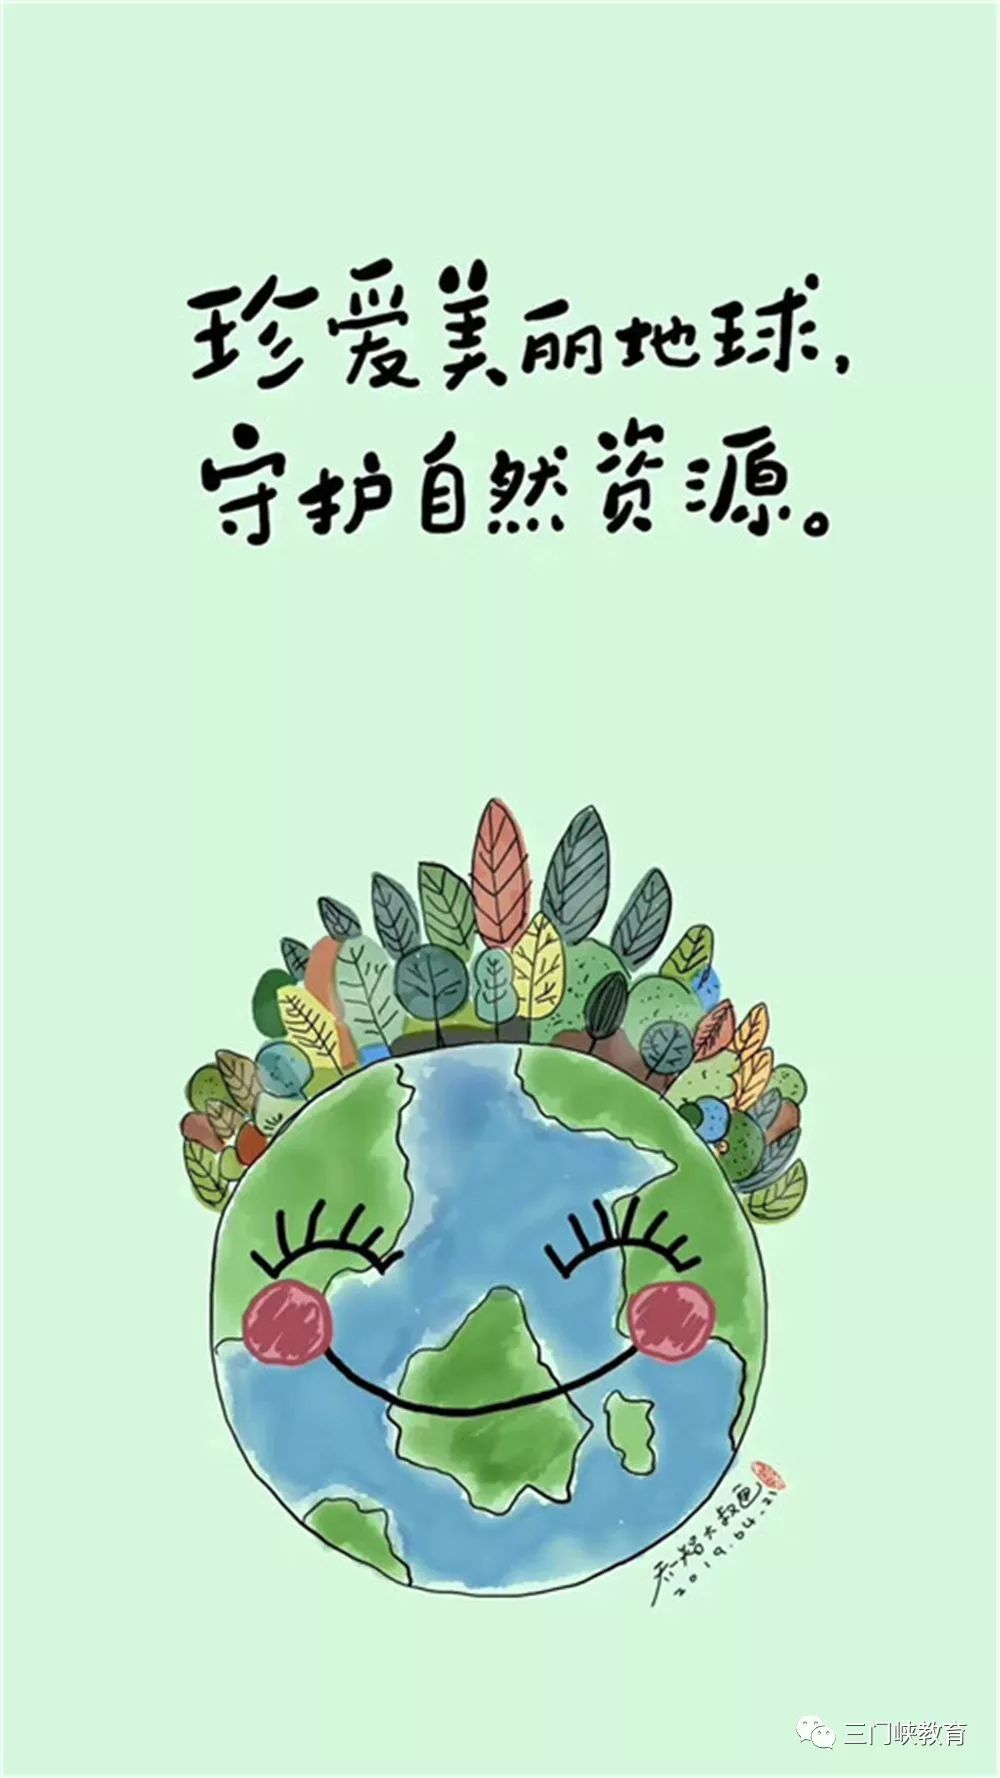 陕州区中心幼儿园:地球妈妈我爱您!